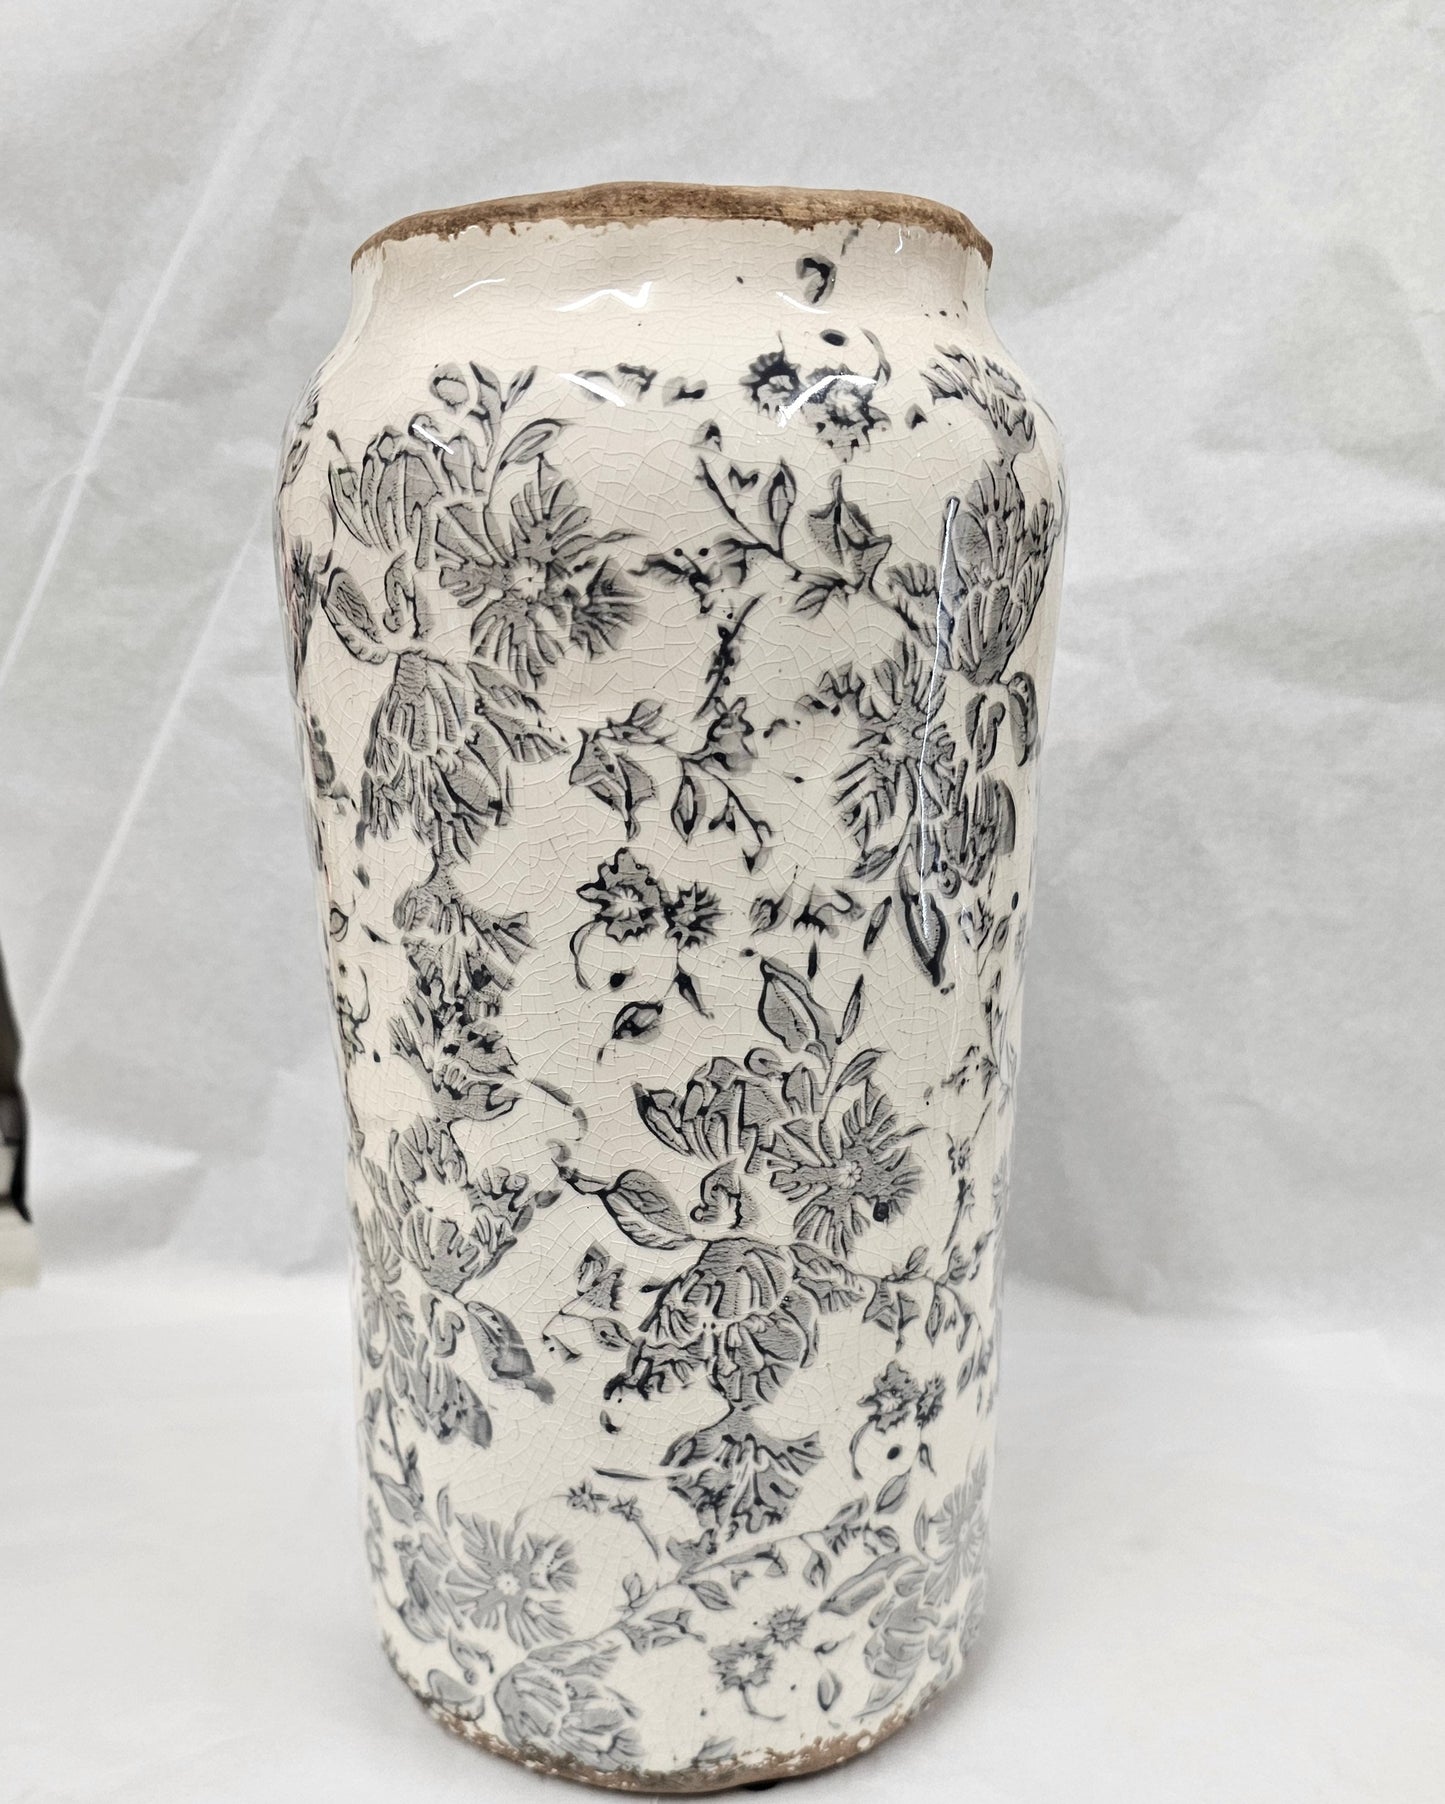 White ceramic urn with dark grey floral design